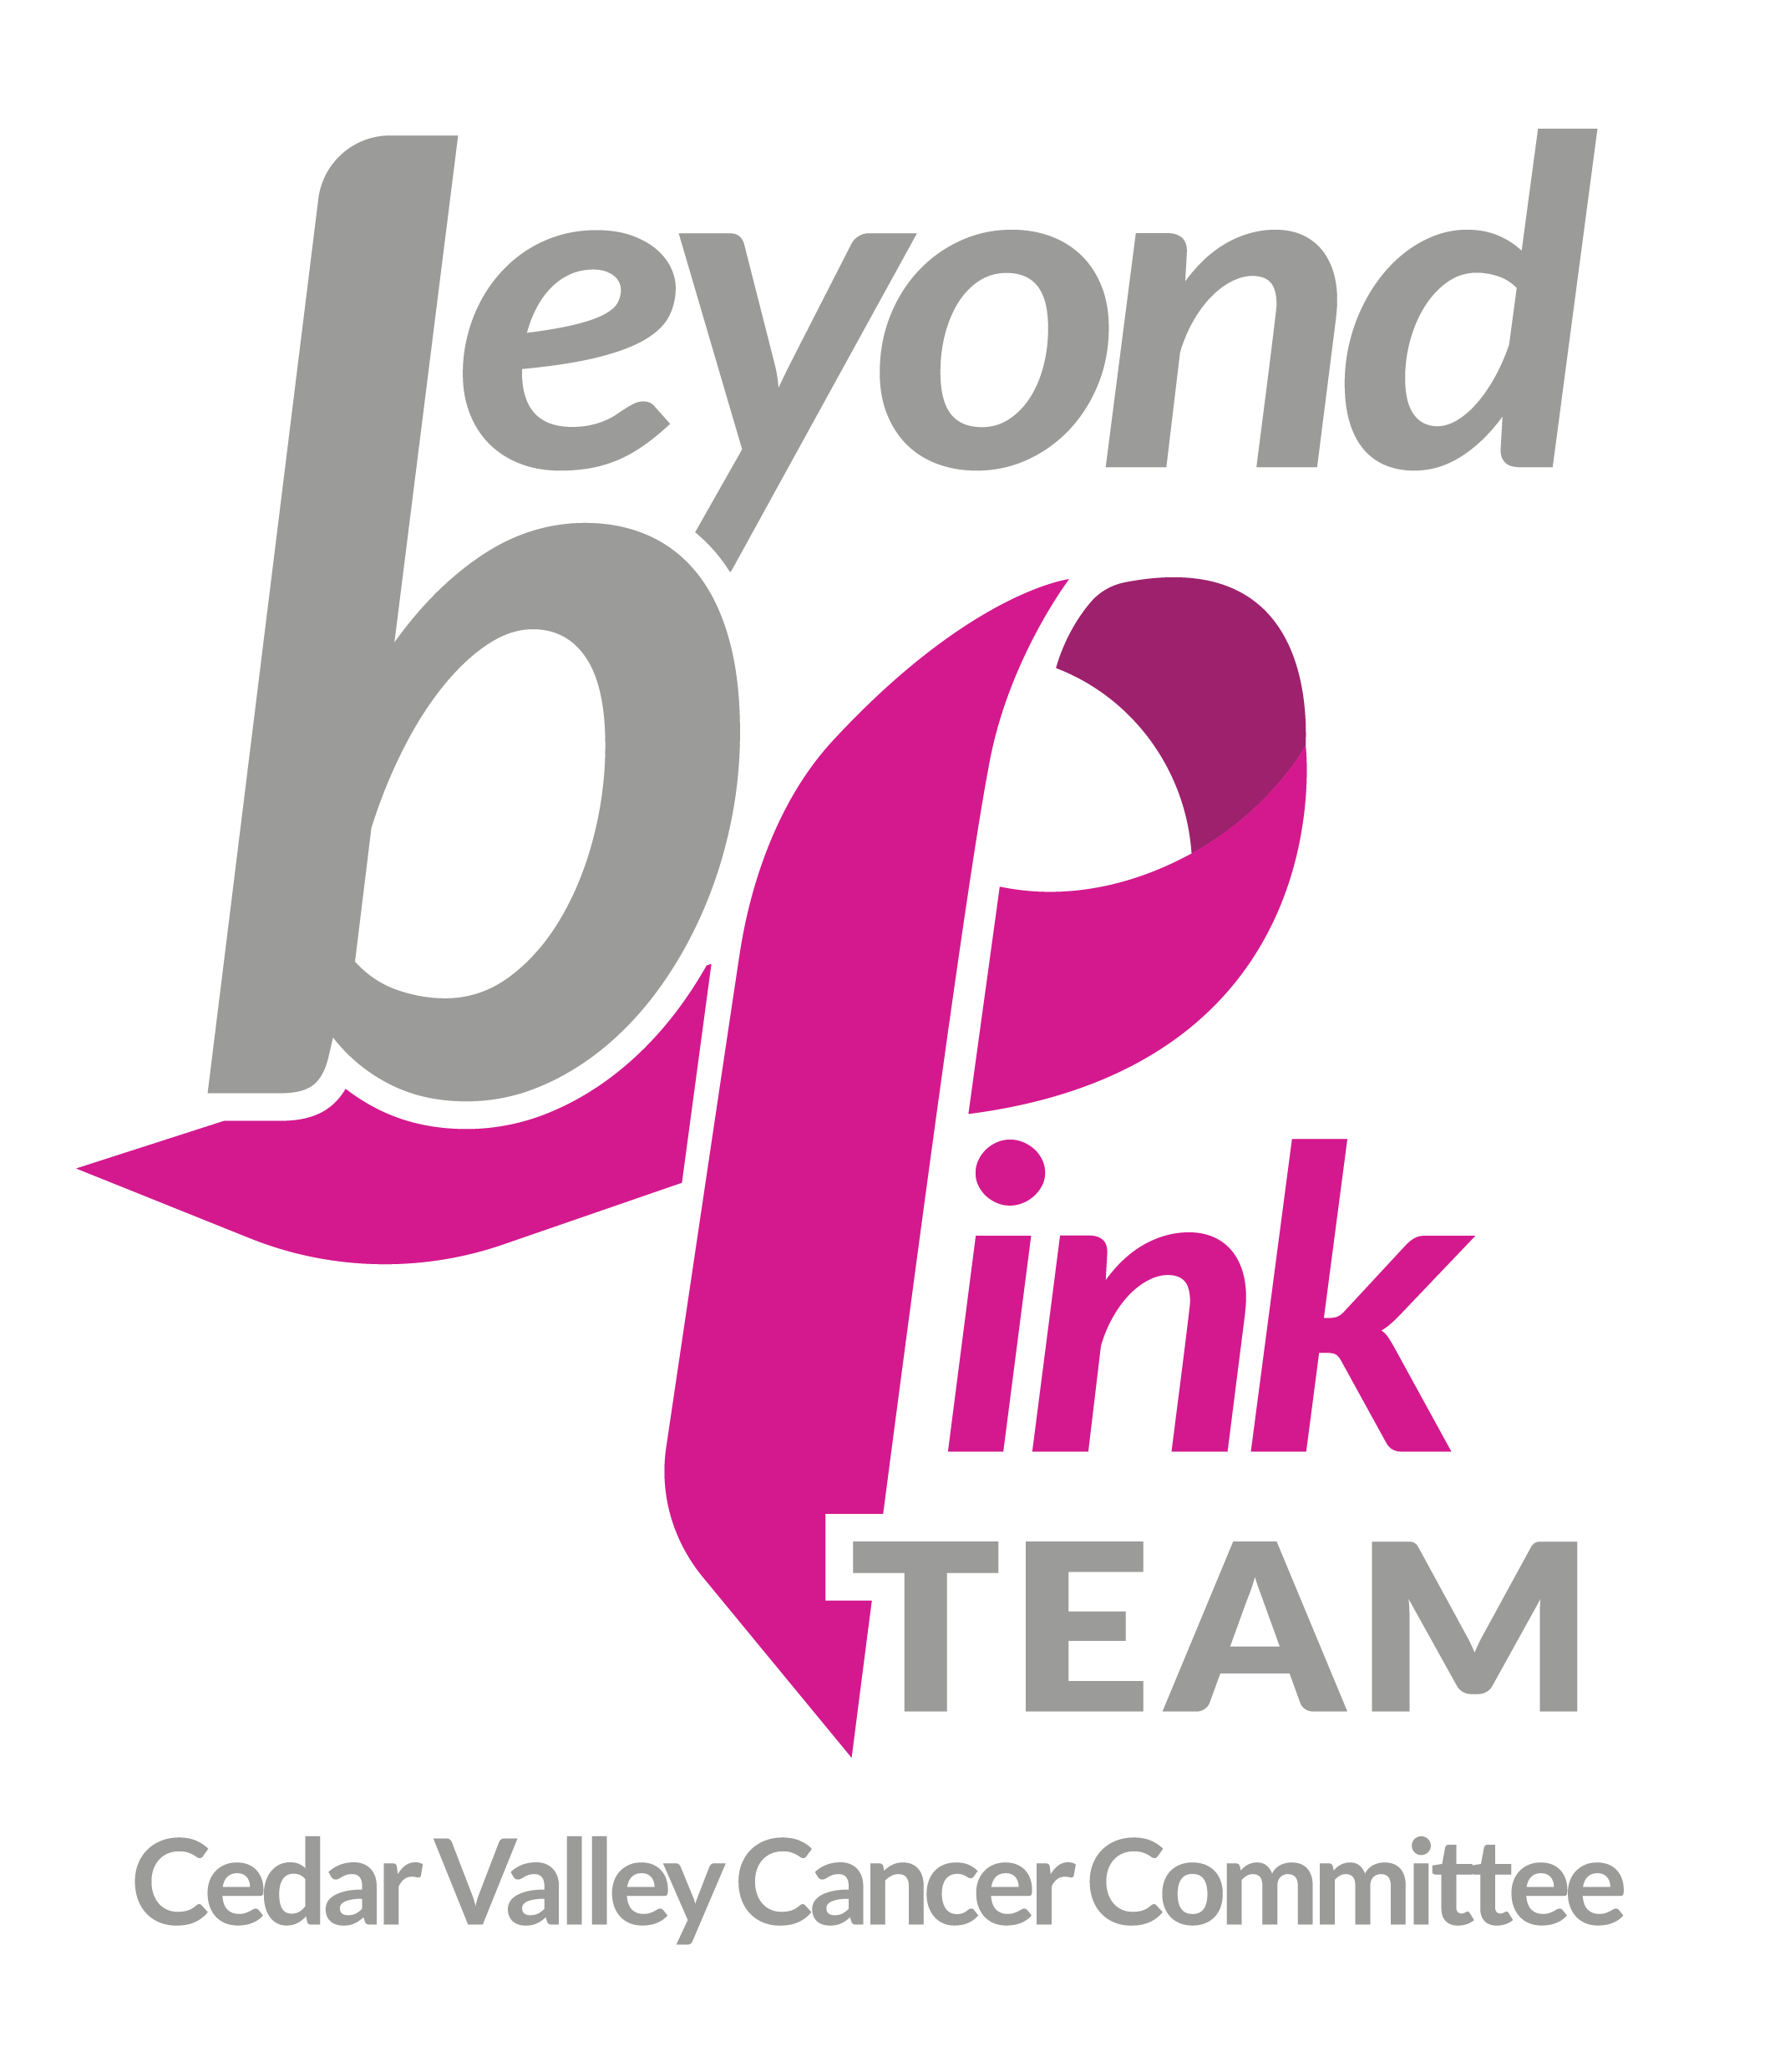 Beyond Pink Team logo